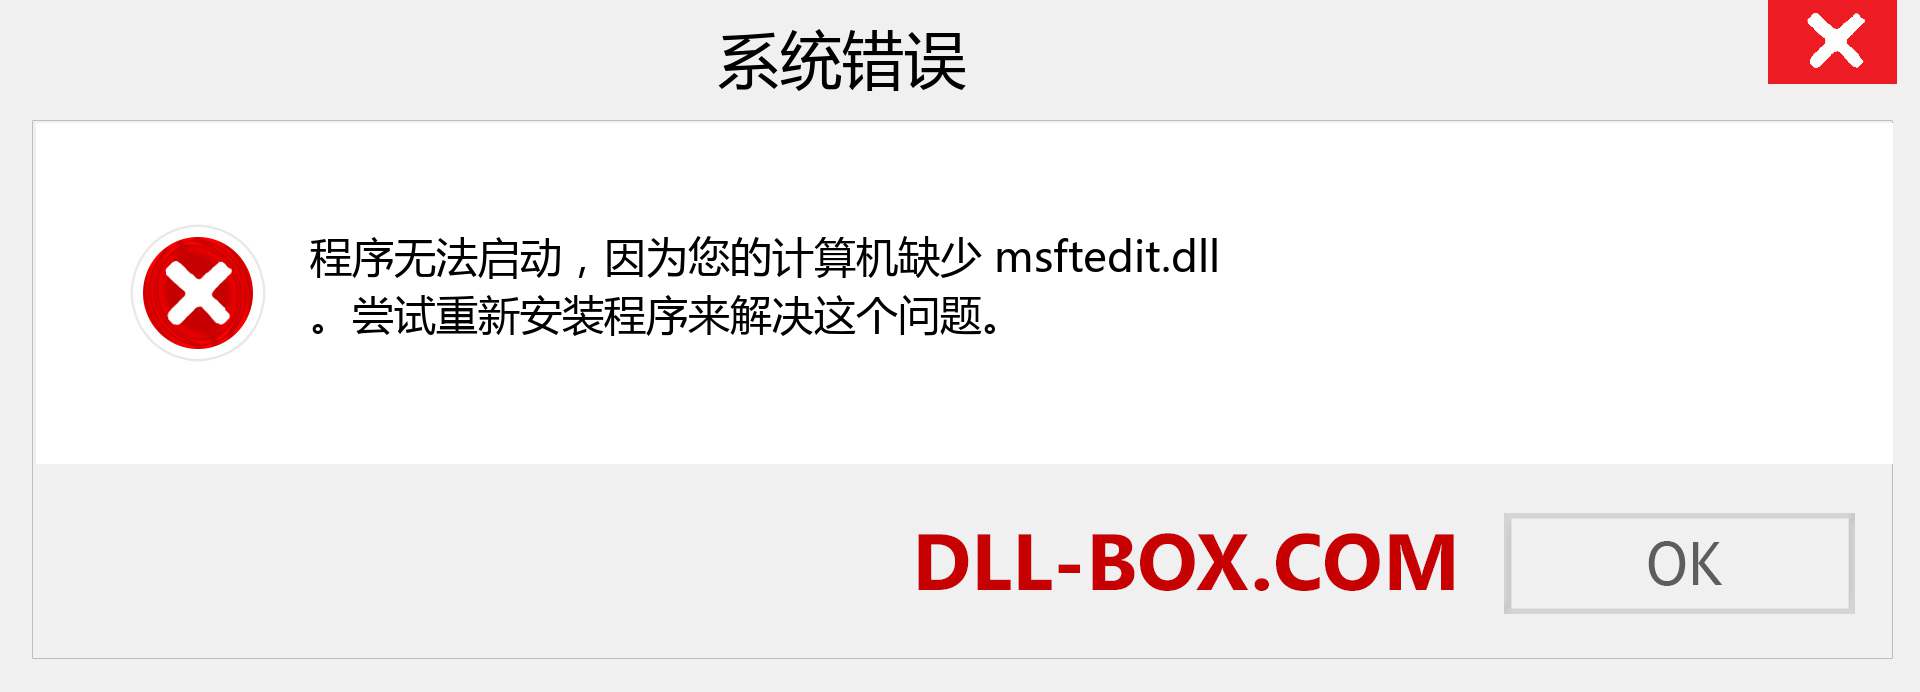 msftedit.dll 文件丢失？。 适用于 Windows 7、8、10 的下载 - 修复 Windows、照片、图像上的 msftedit dll 丢失错误